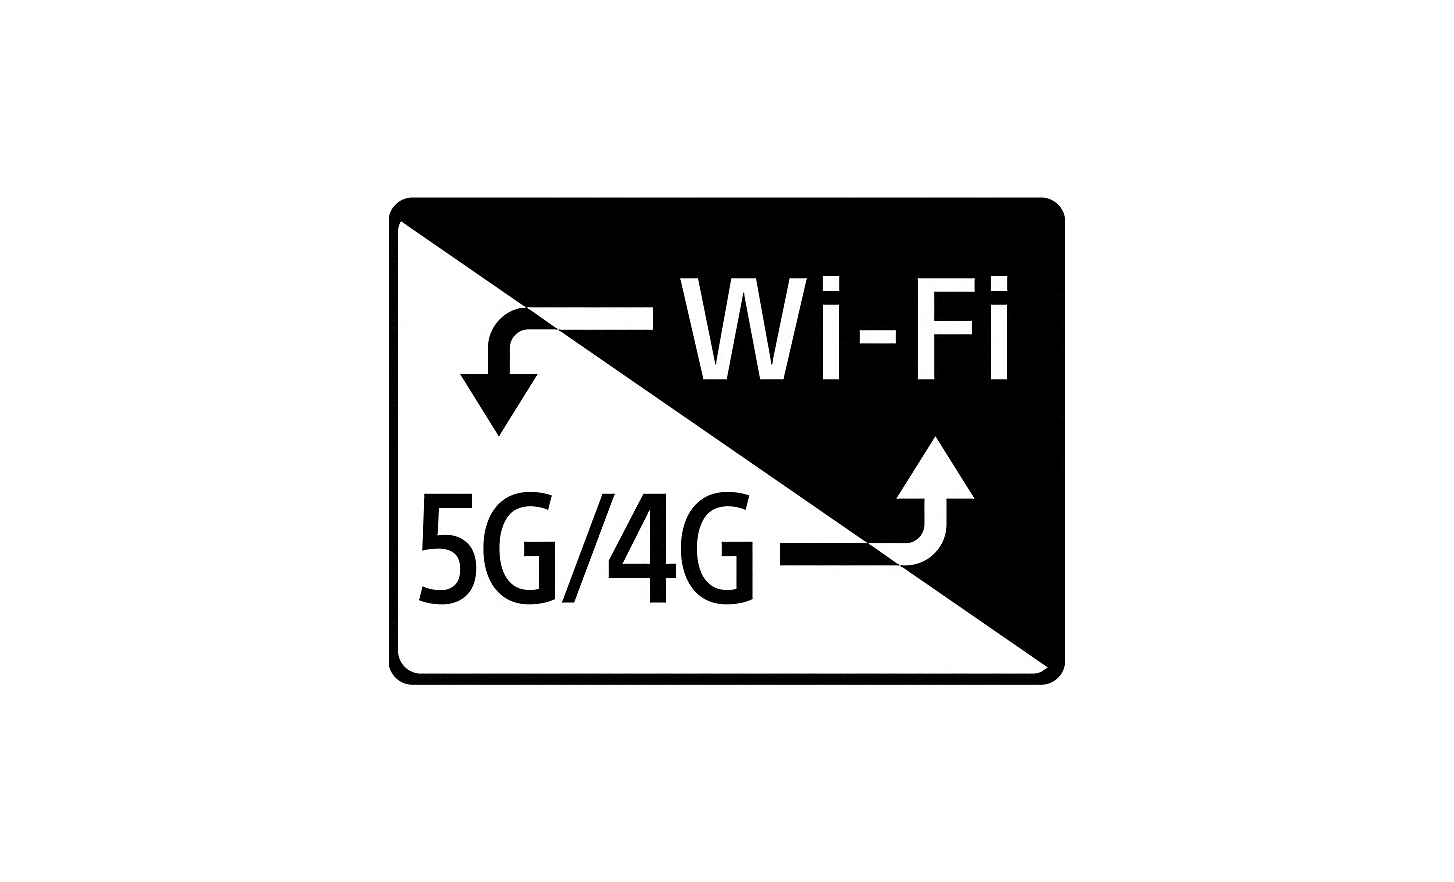 Logo for smart tilkobling med 5G/4G og Wi-Fi